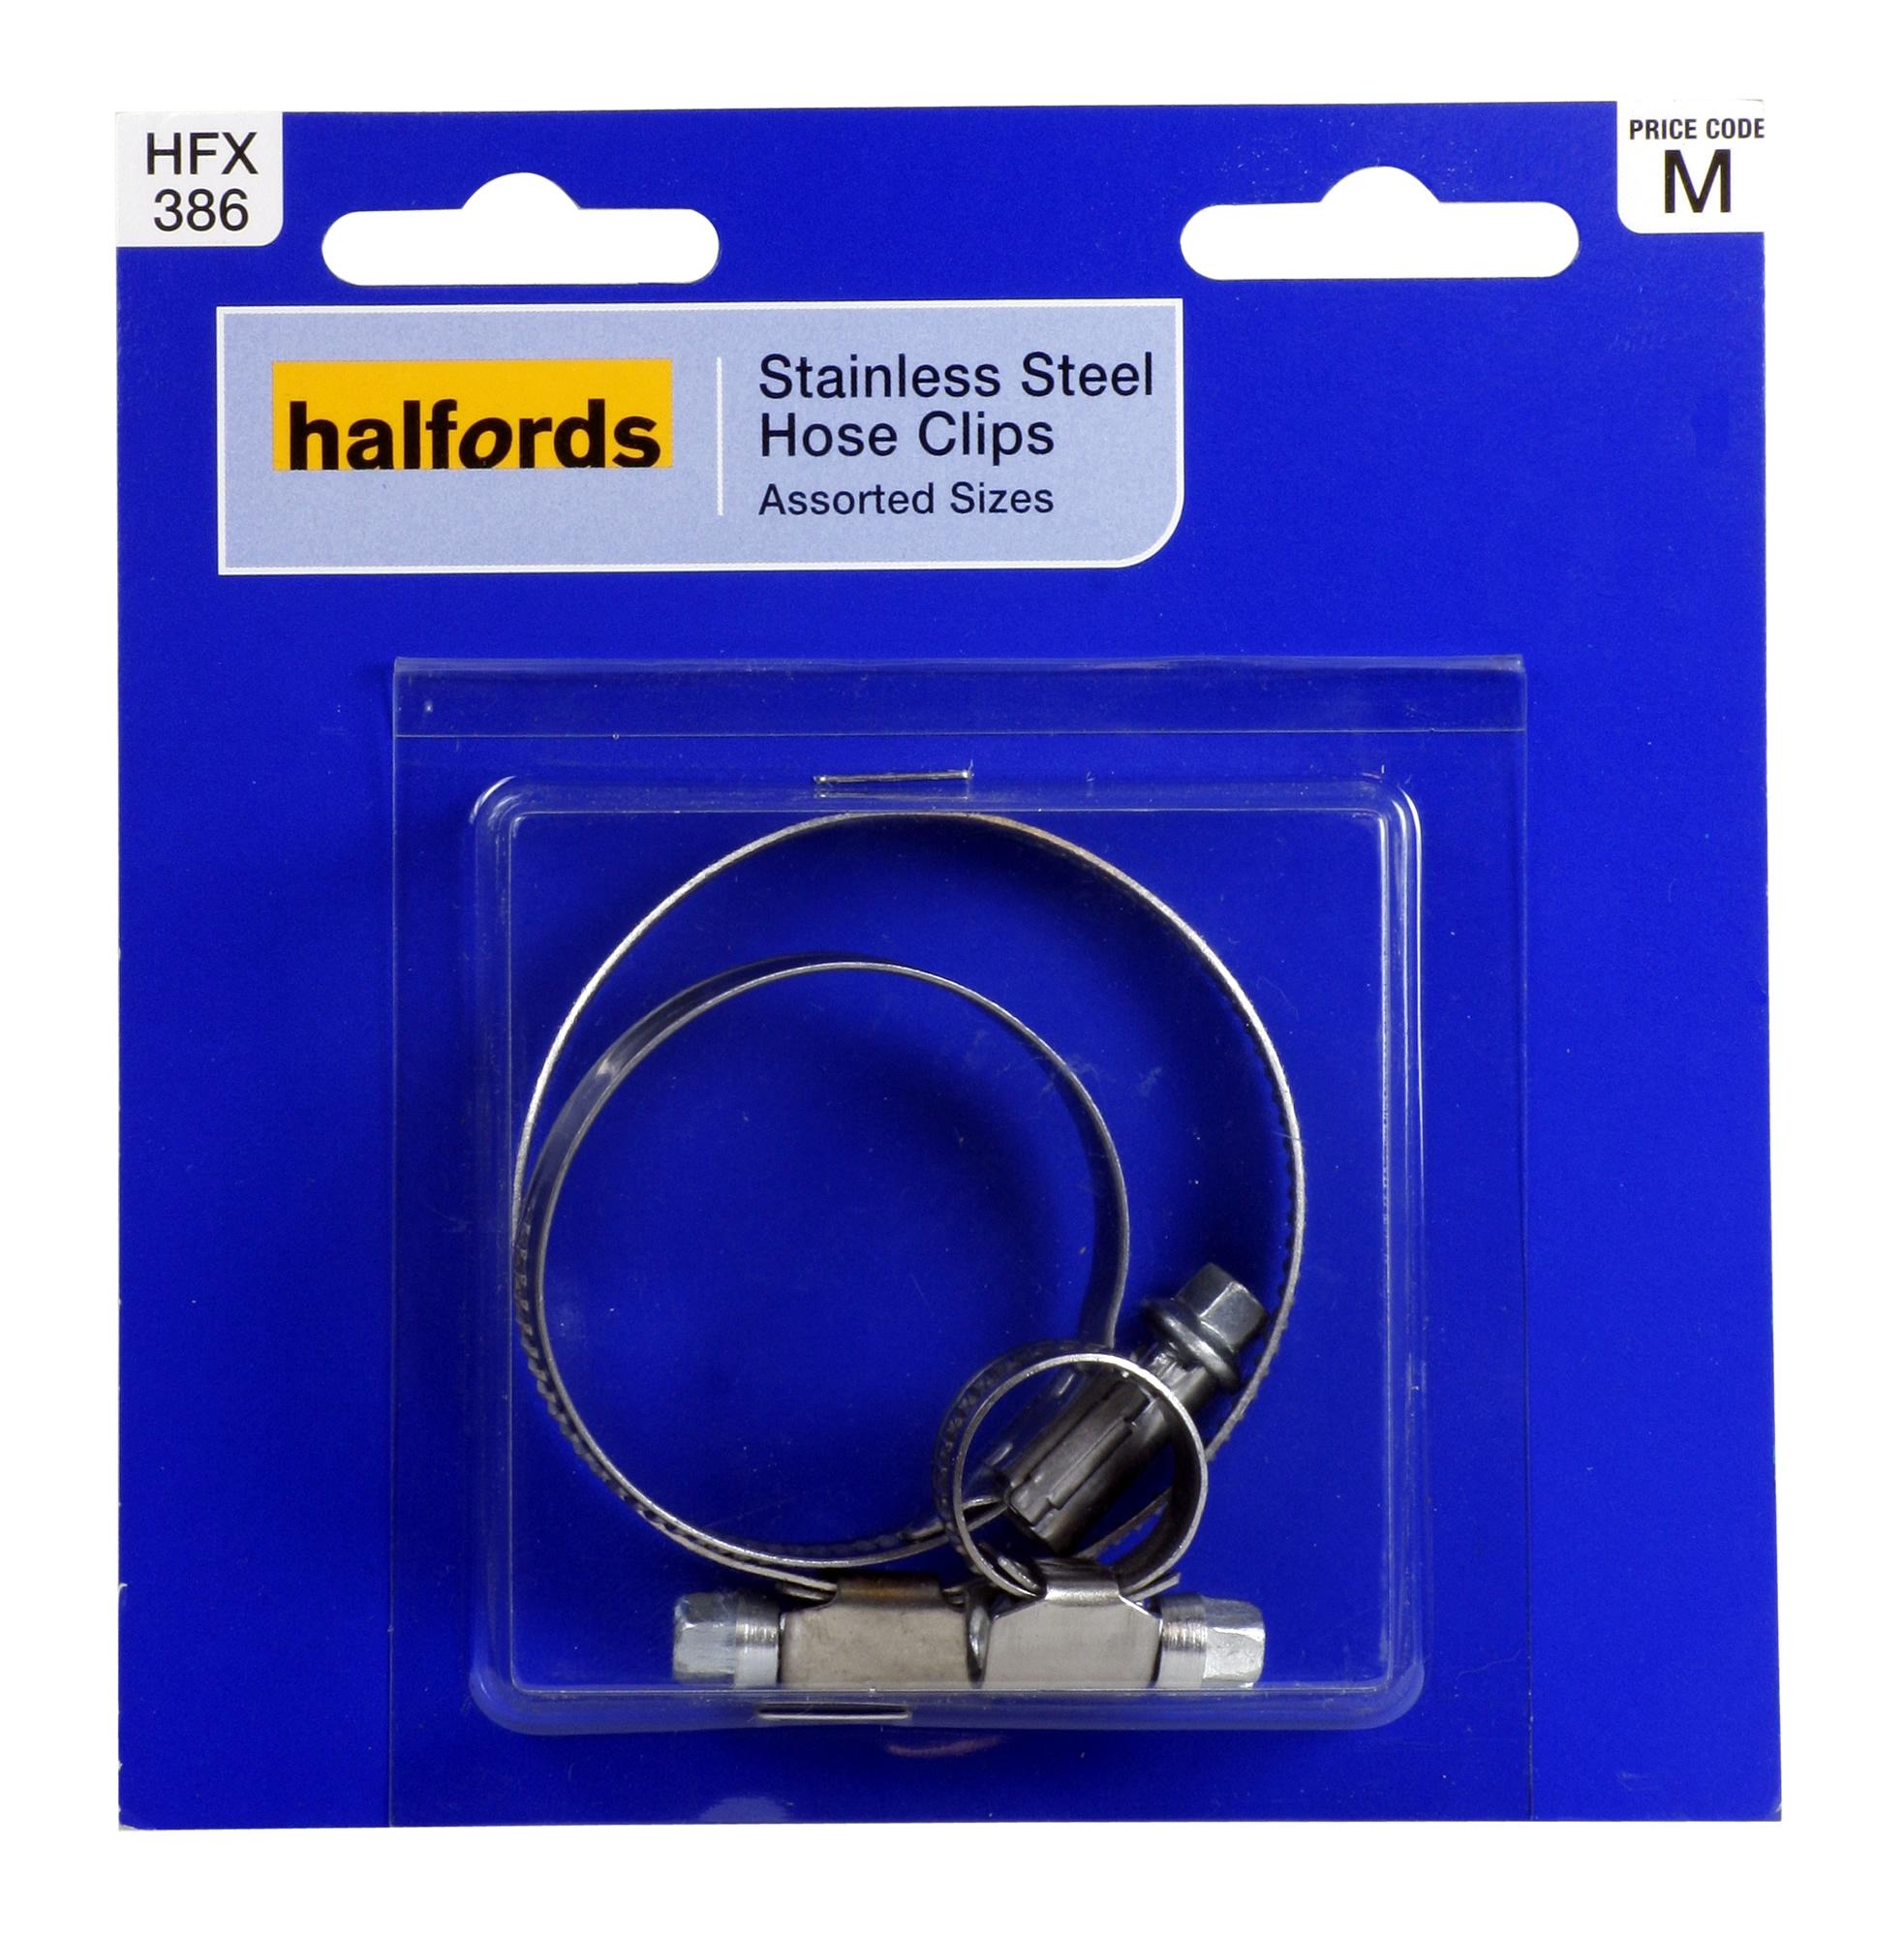 Halfords Hose Clips Assorted Hfx386